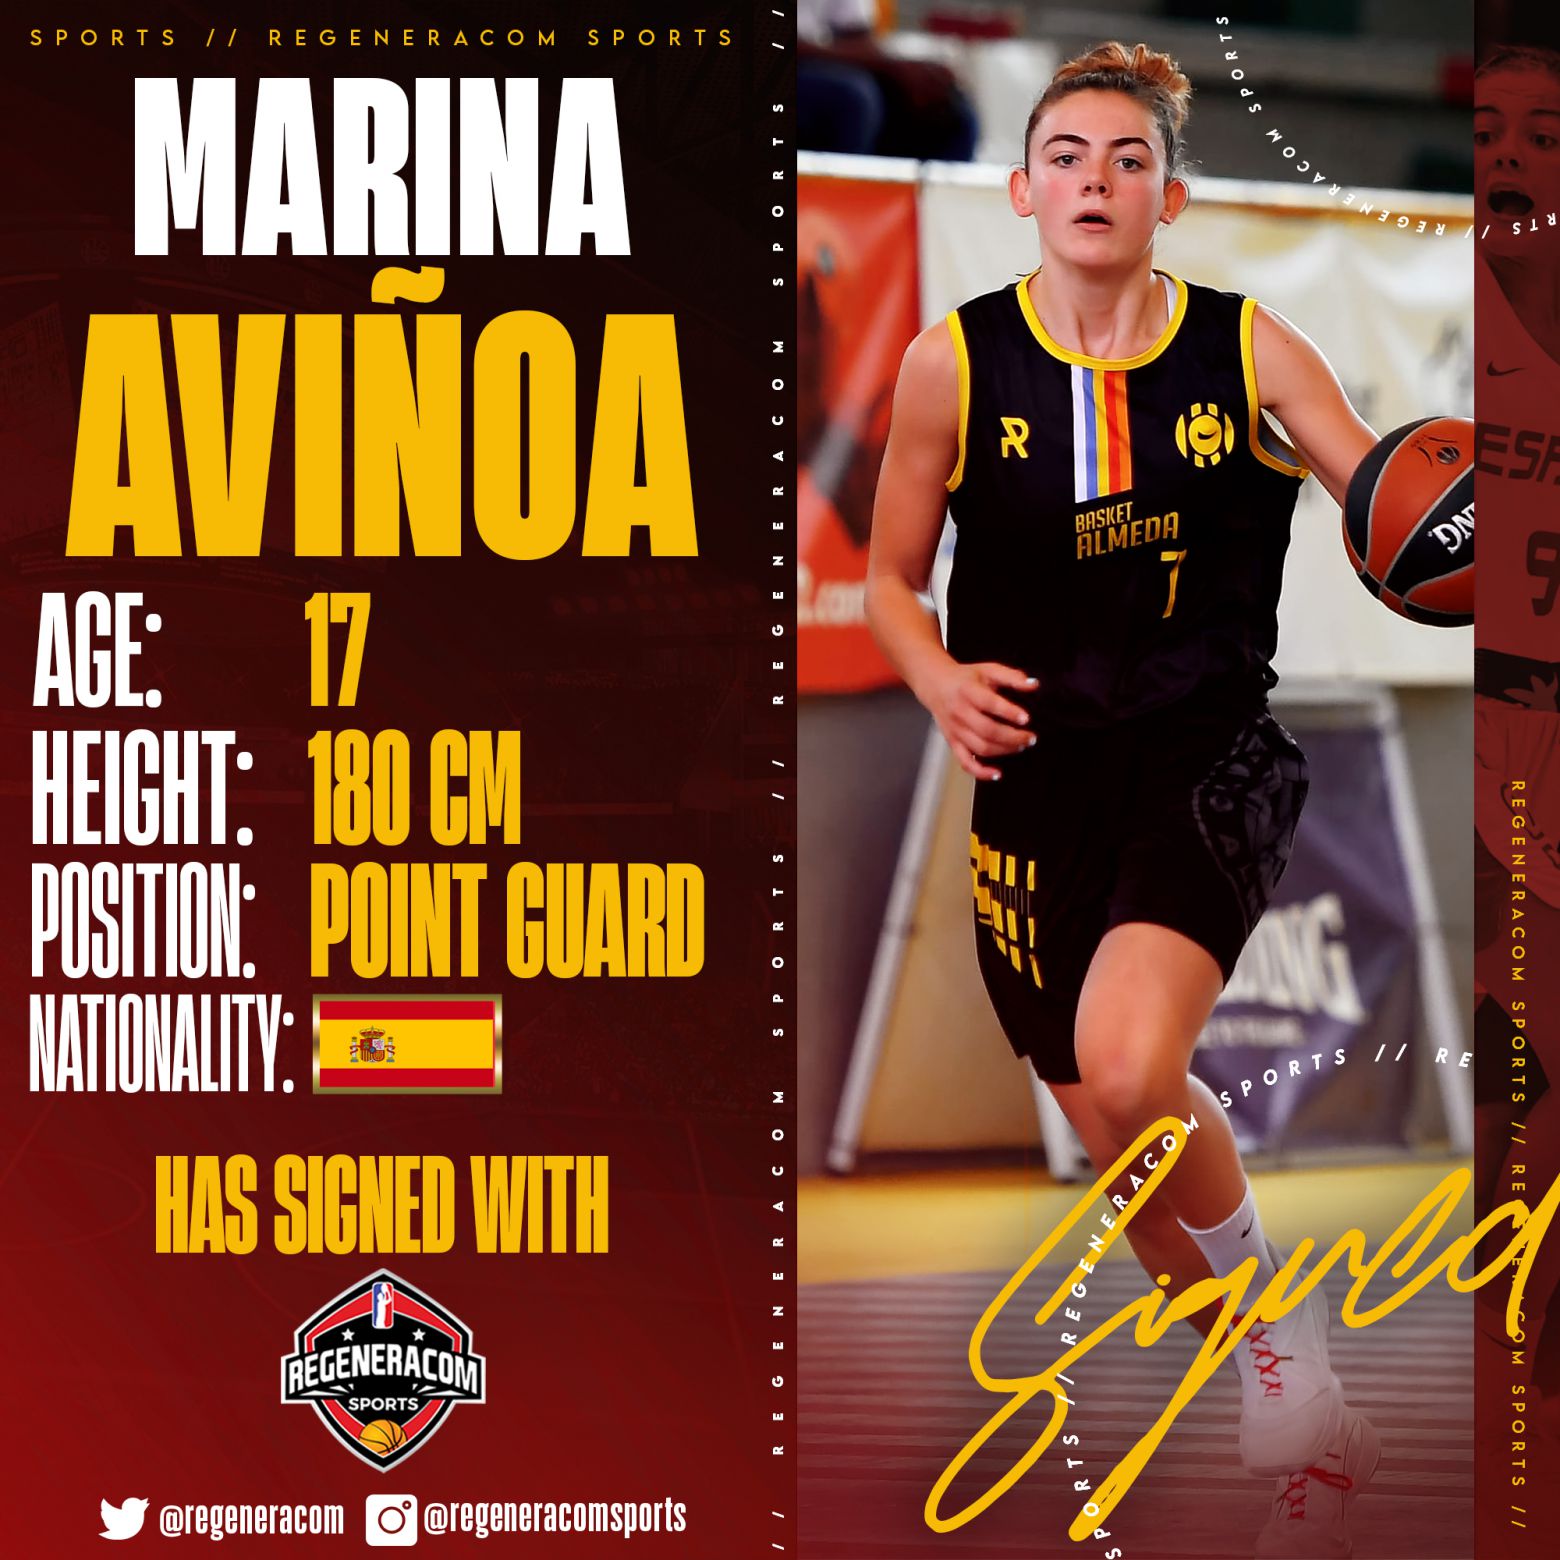 MARINA AVIÑOA has signed with Regeneracom Sports